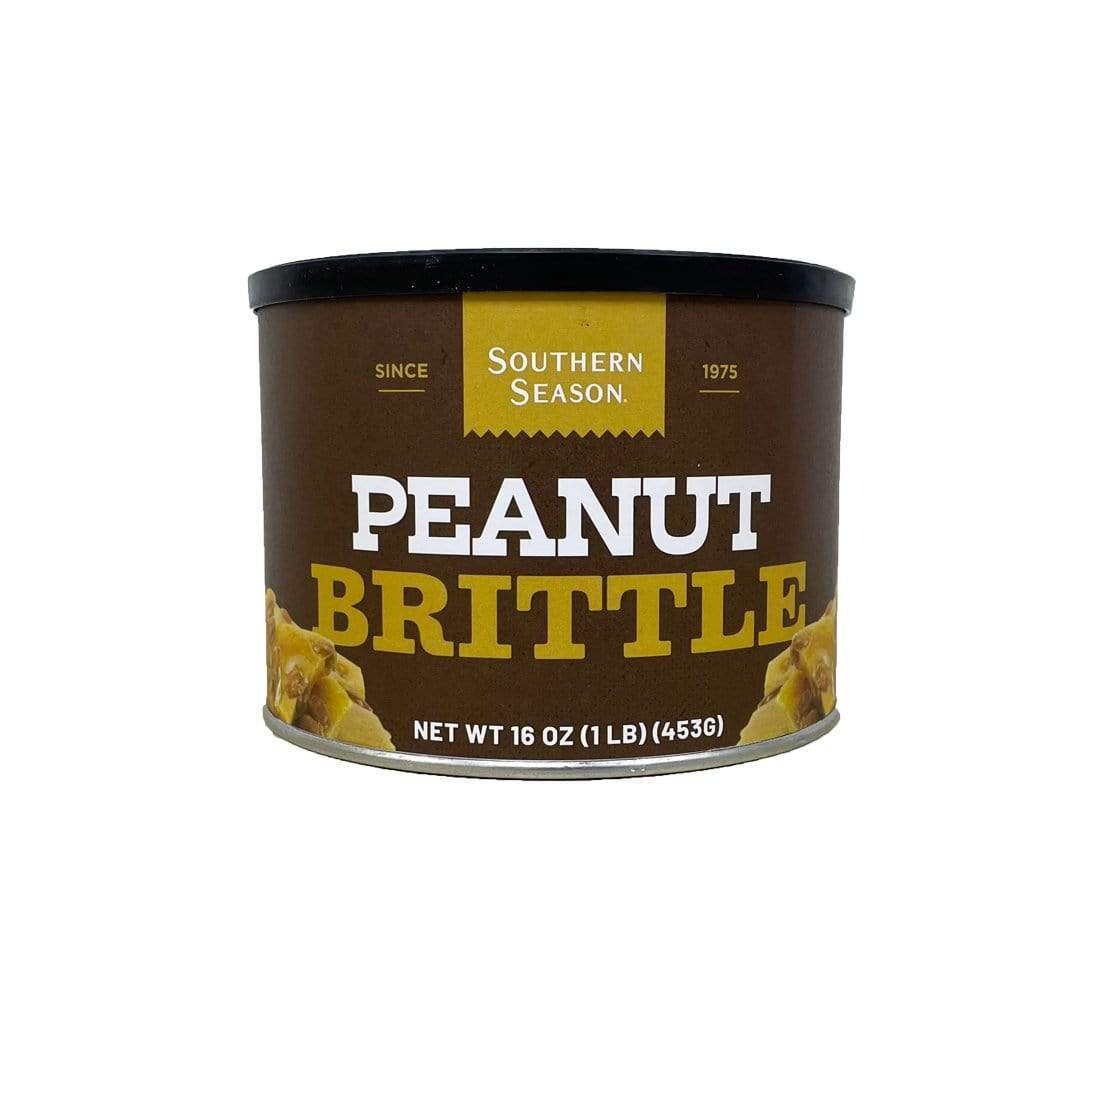 Southern Season Southern Season Peanut Brittle 16 oz